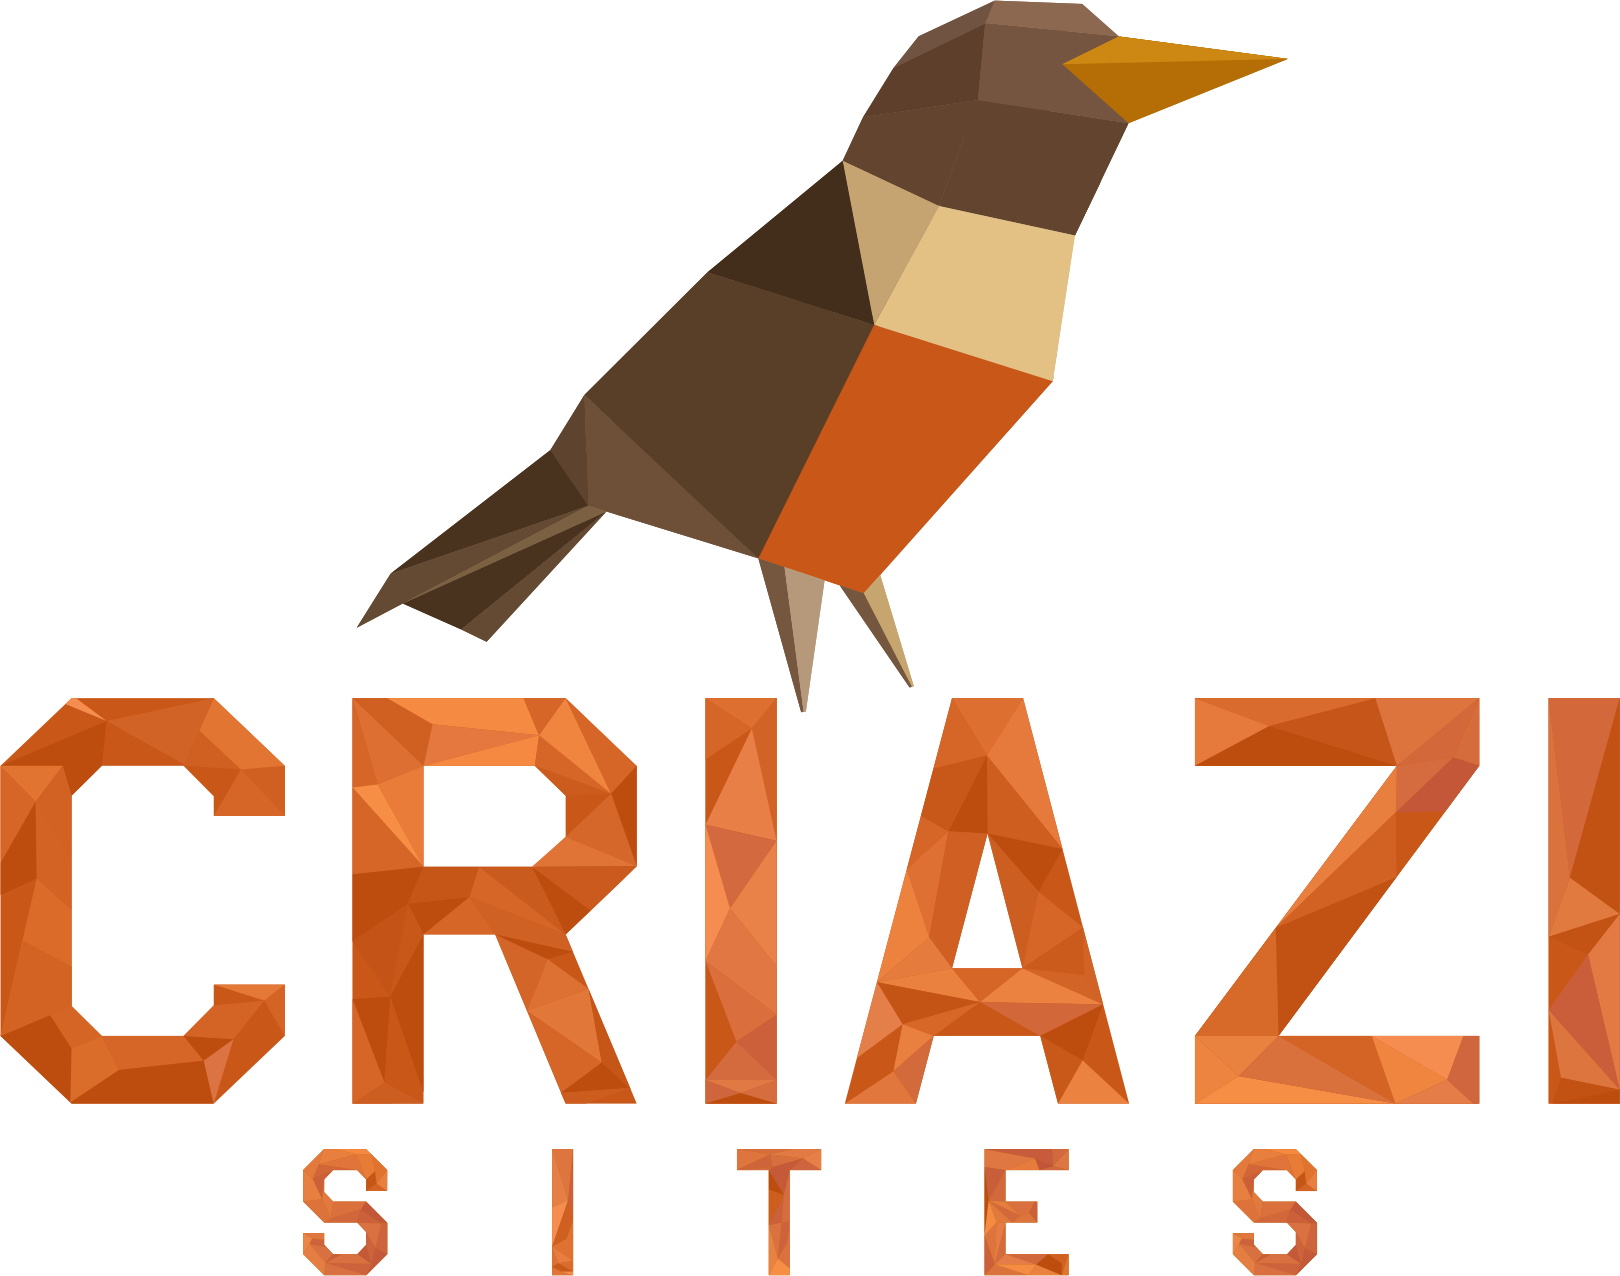 CRIAZI Websites